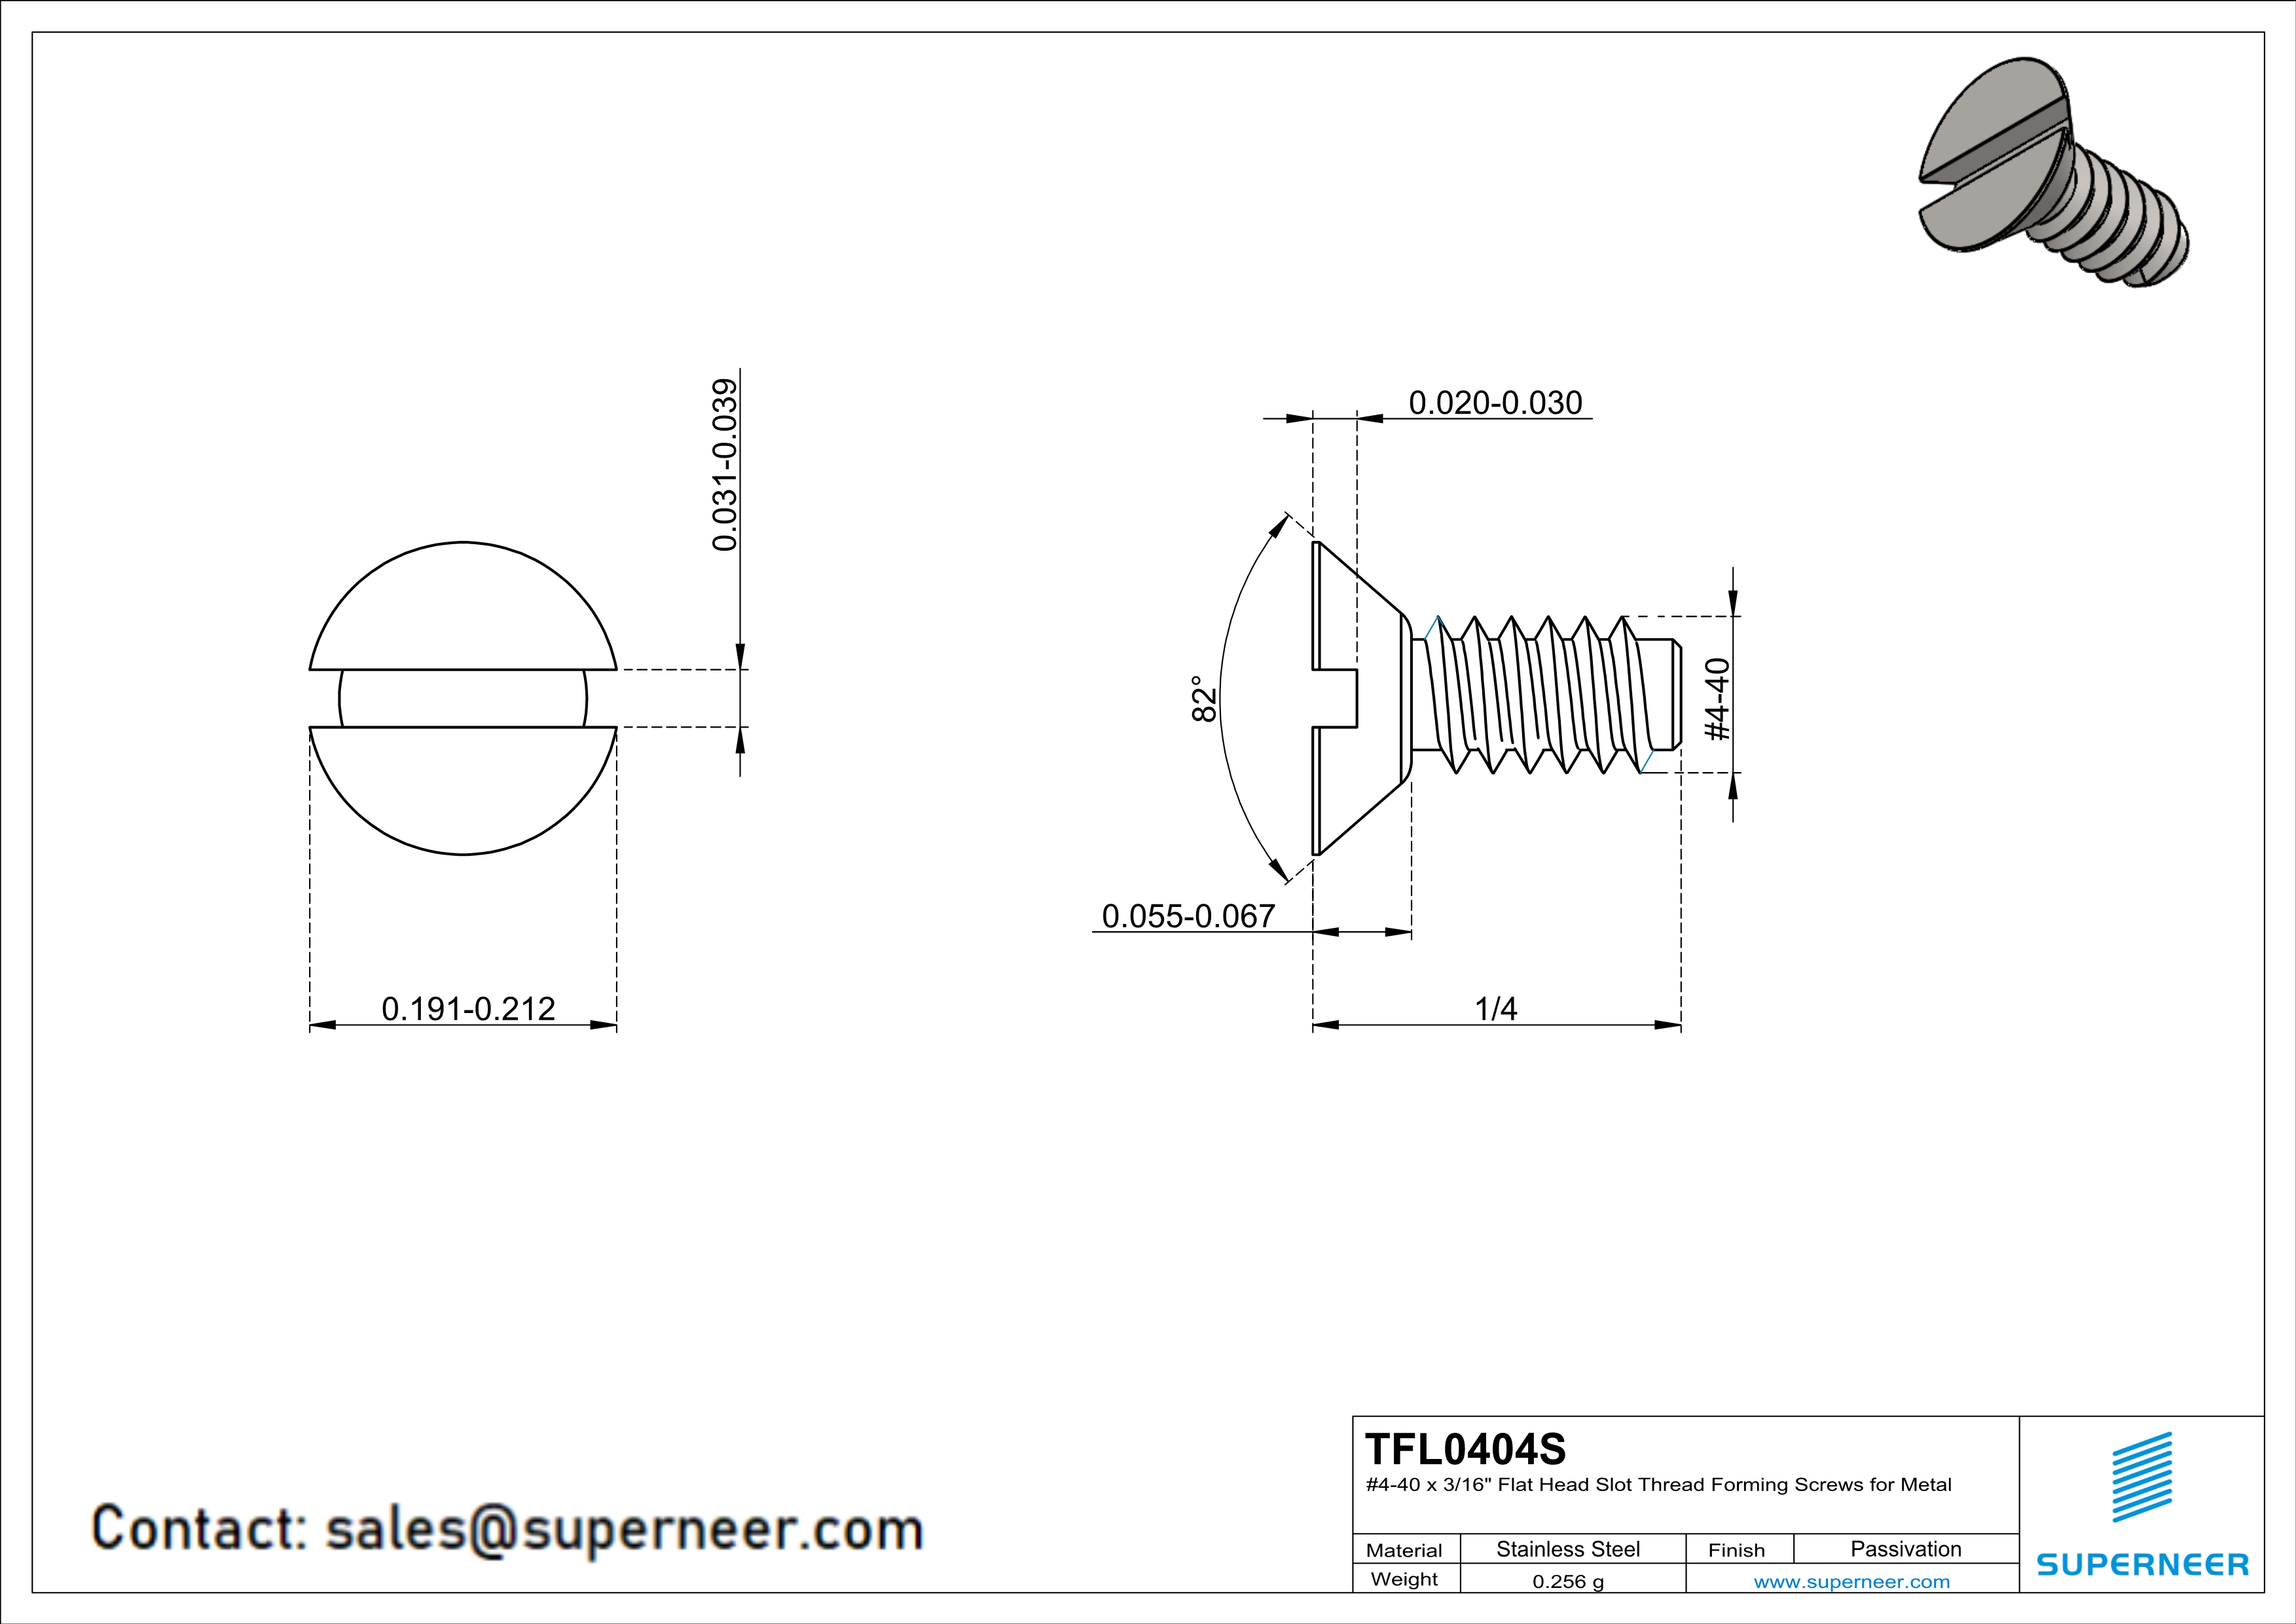 4-40 × 1/4 Flat Head Slot Thread Forming  Screws for Metal  SUS304 Stainless Steel Inox